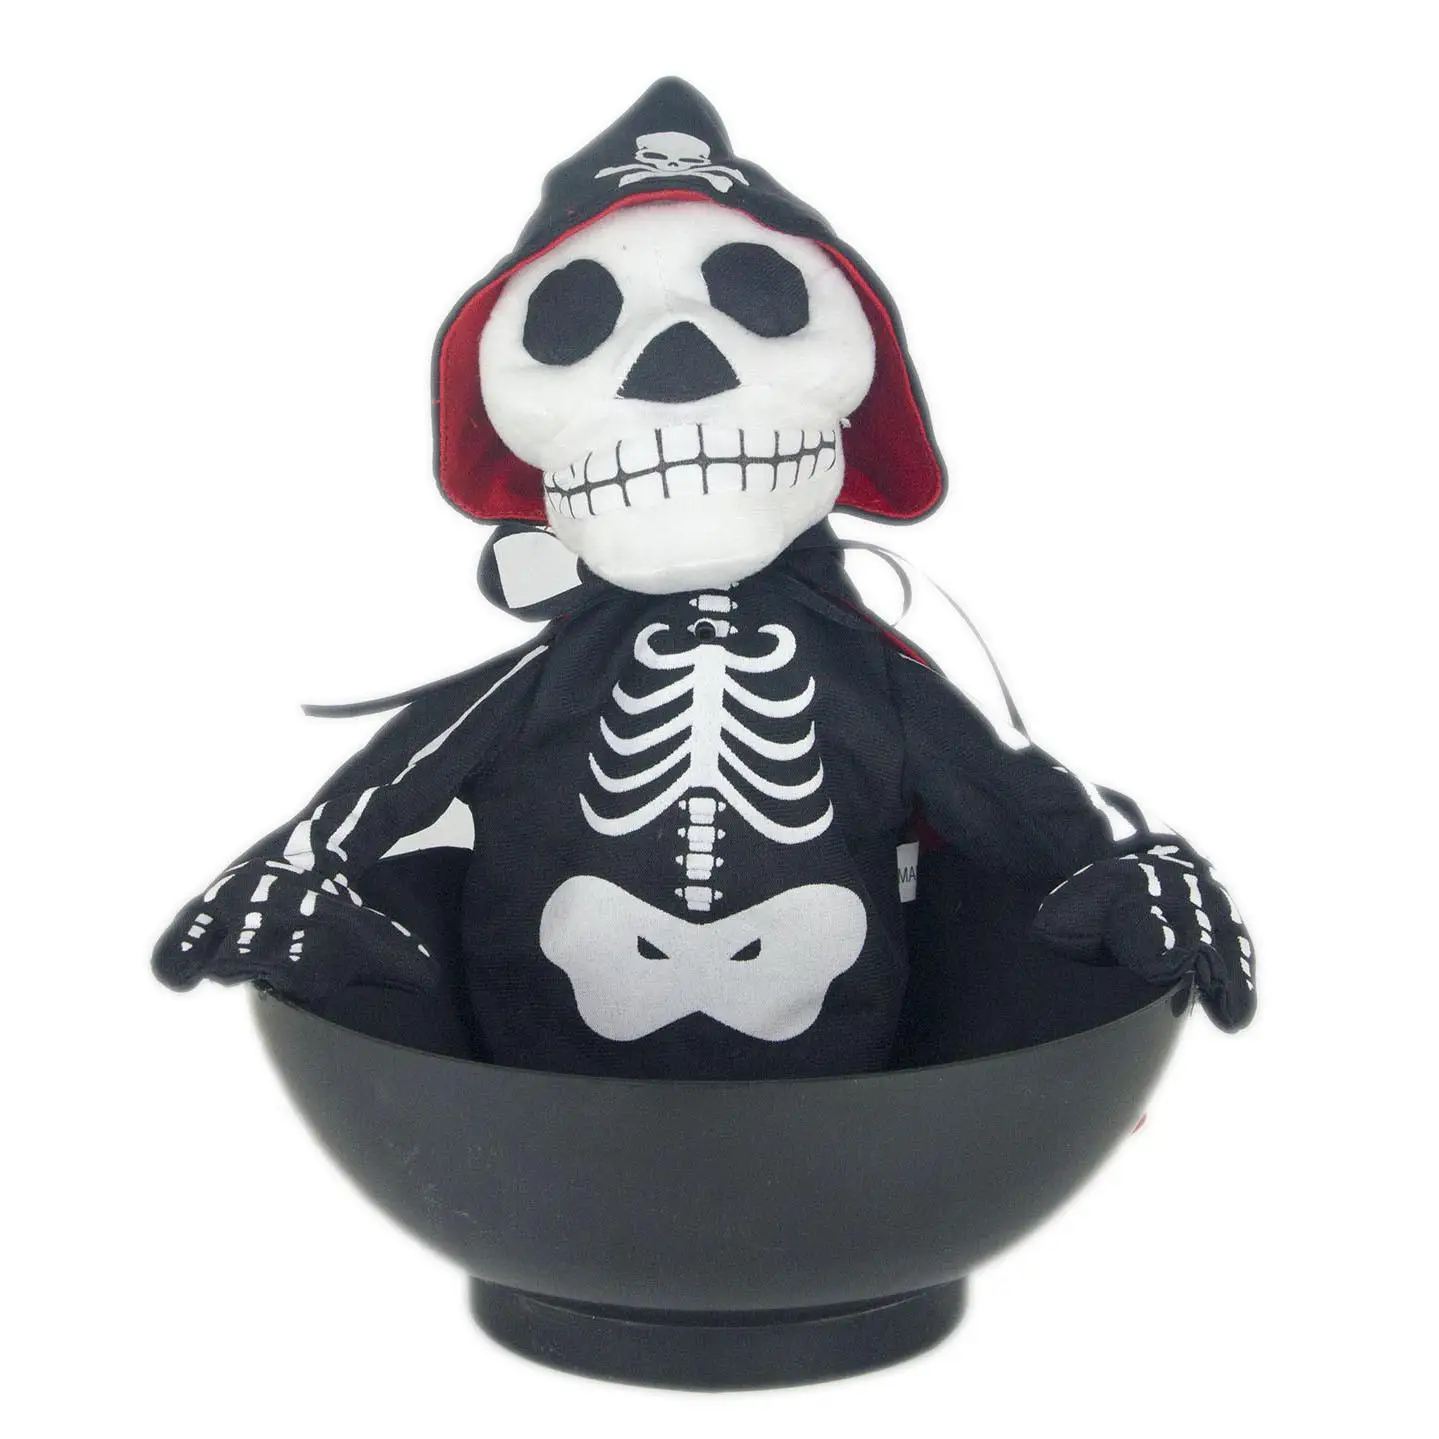 Конфеты горшок говорить призрак Горячая пародия Хэллоуин чаша призрак Забавные Развлечения кафе электронный страшный скелет плюшевые куклы - Цвет: Cool Skull